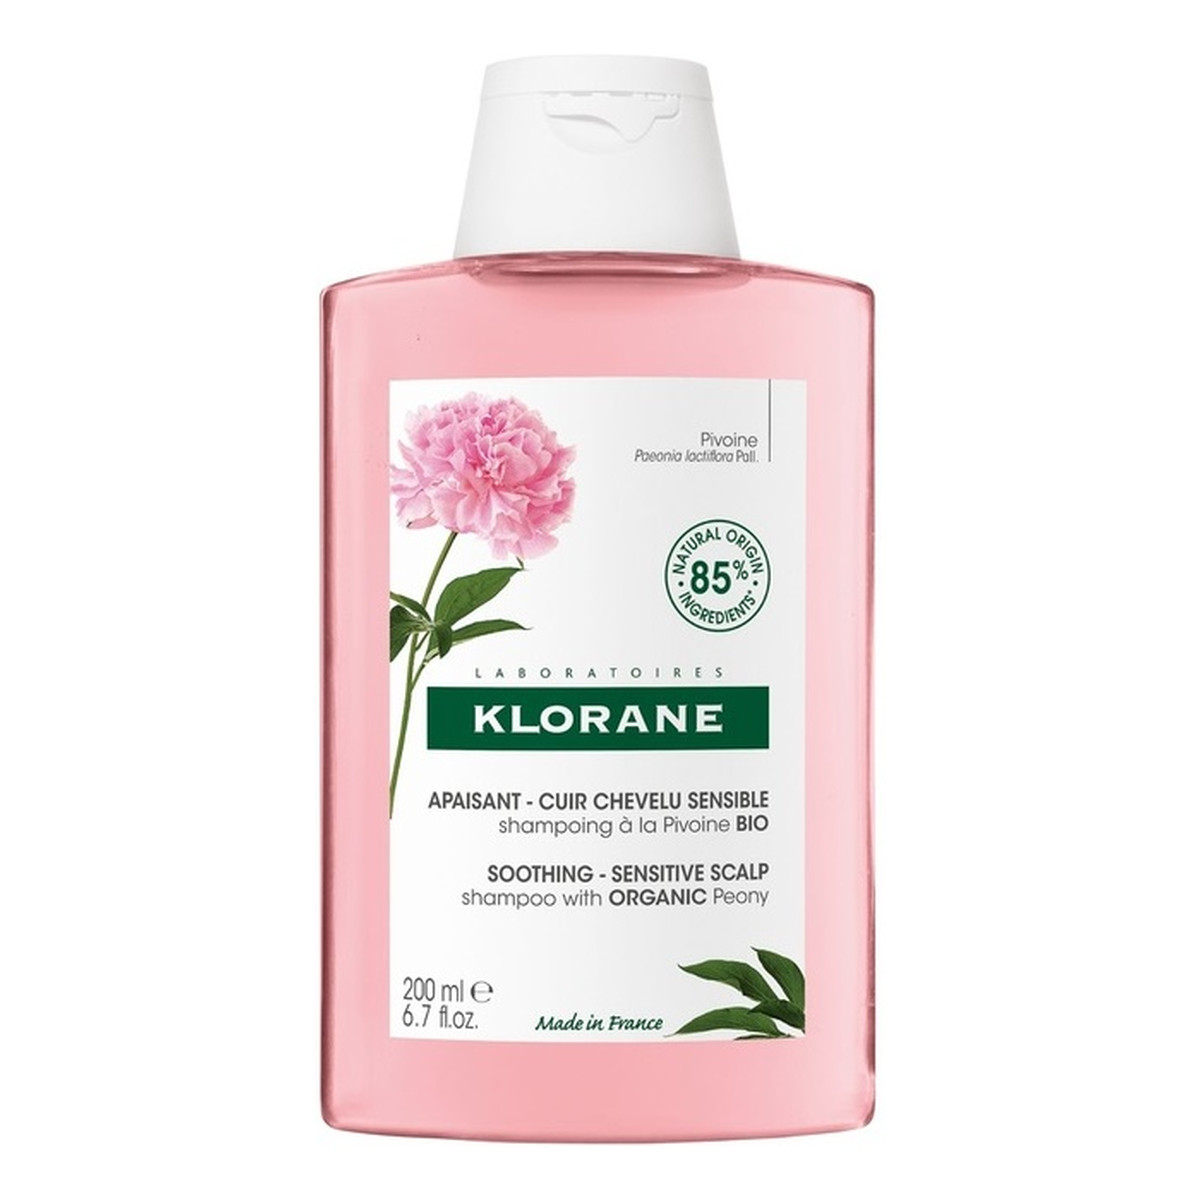 Klorane Soothing shampoo szampon z organiczną piwonią 200ml